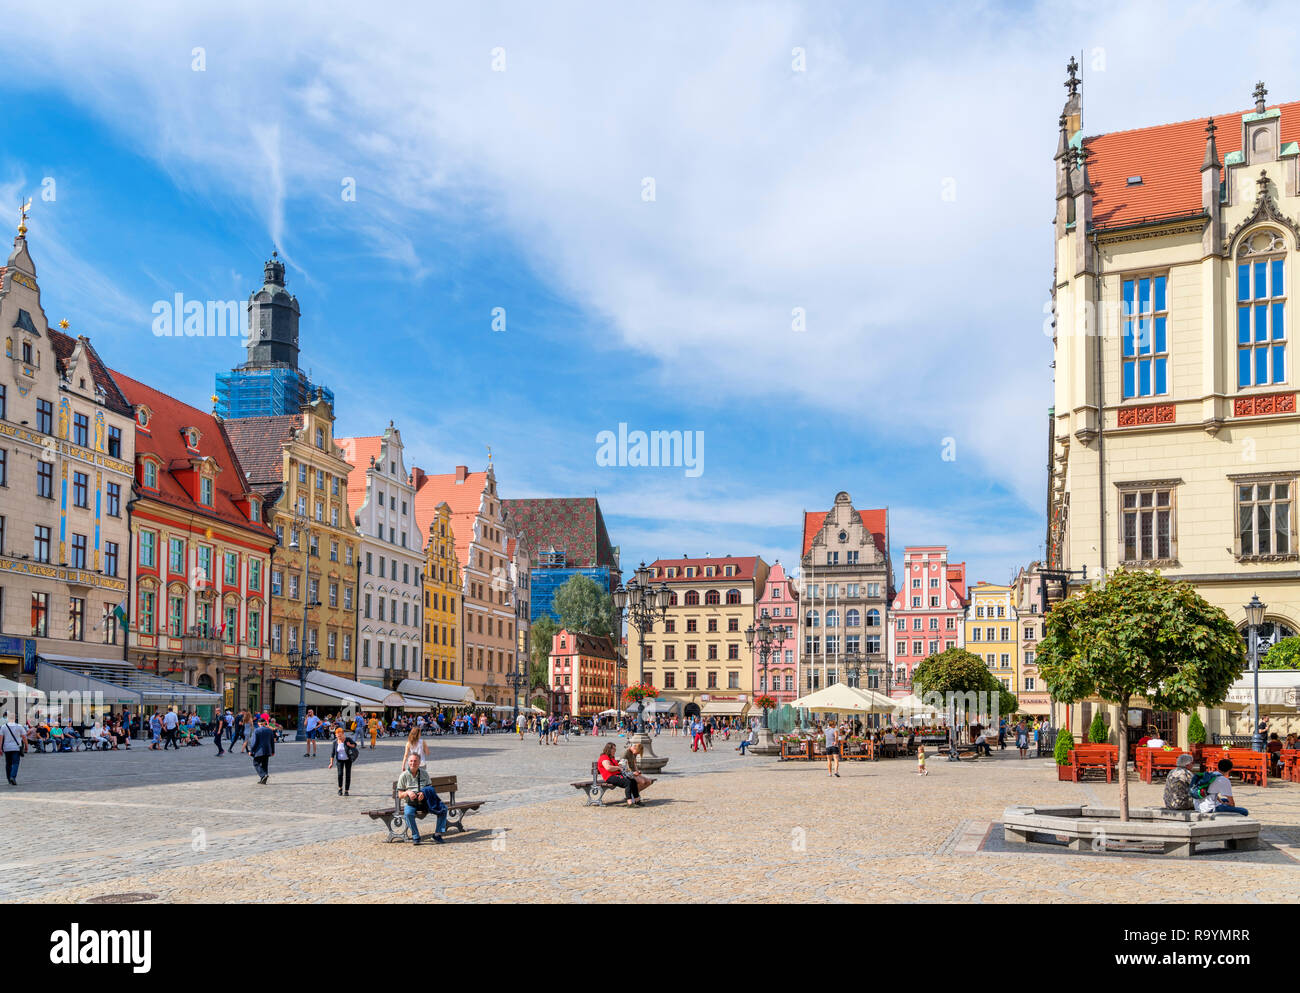 Wroclaw, Vieille Ville (Stare Miasto). Boutiques et cafés sur la place du marché (Rynek we Wrocławiu), Wroclaw, Pologne Banque D'Images